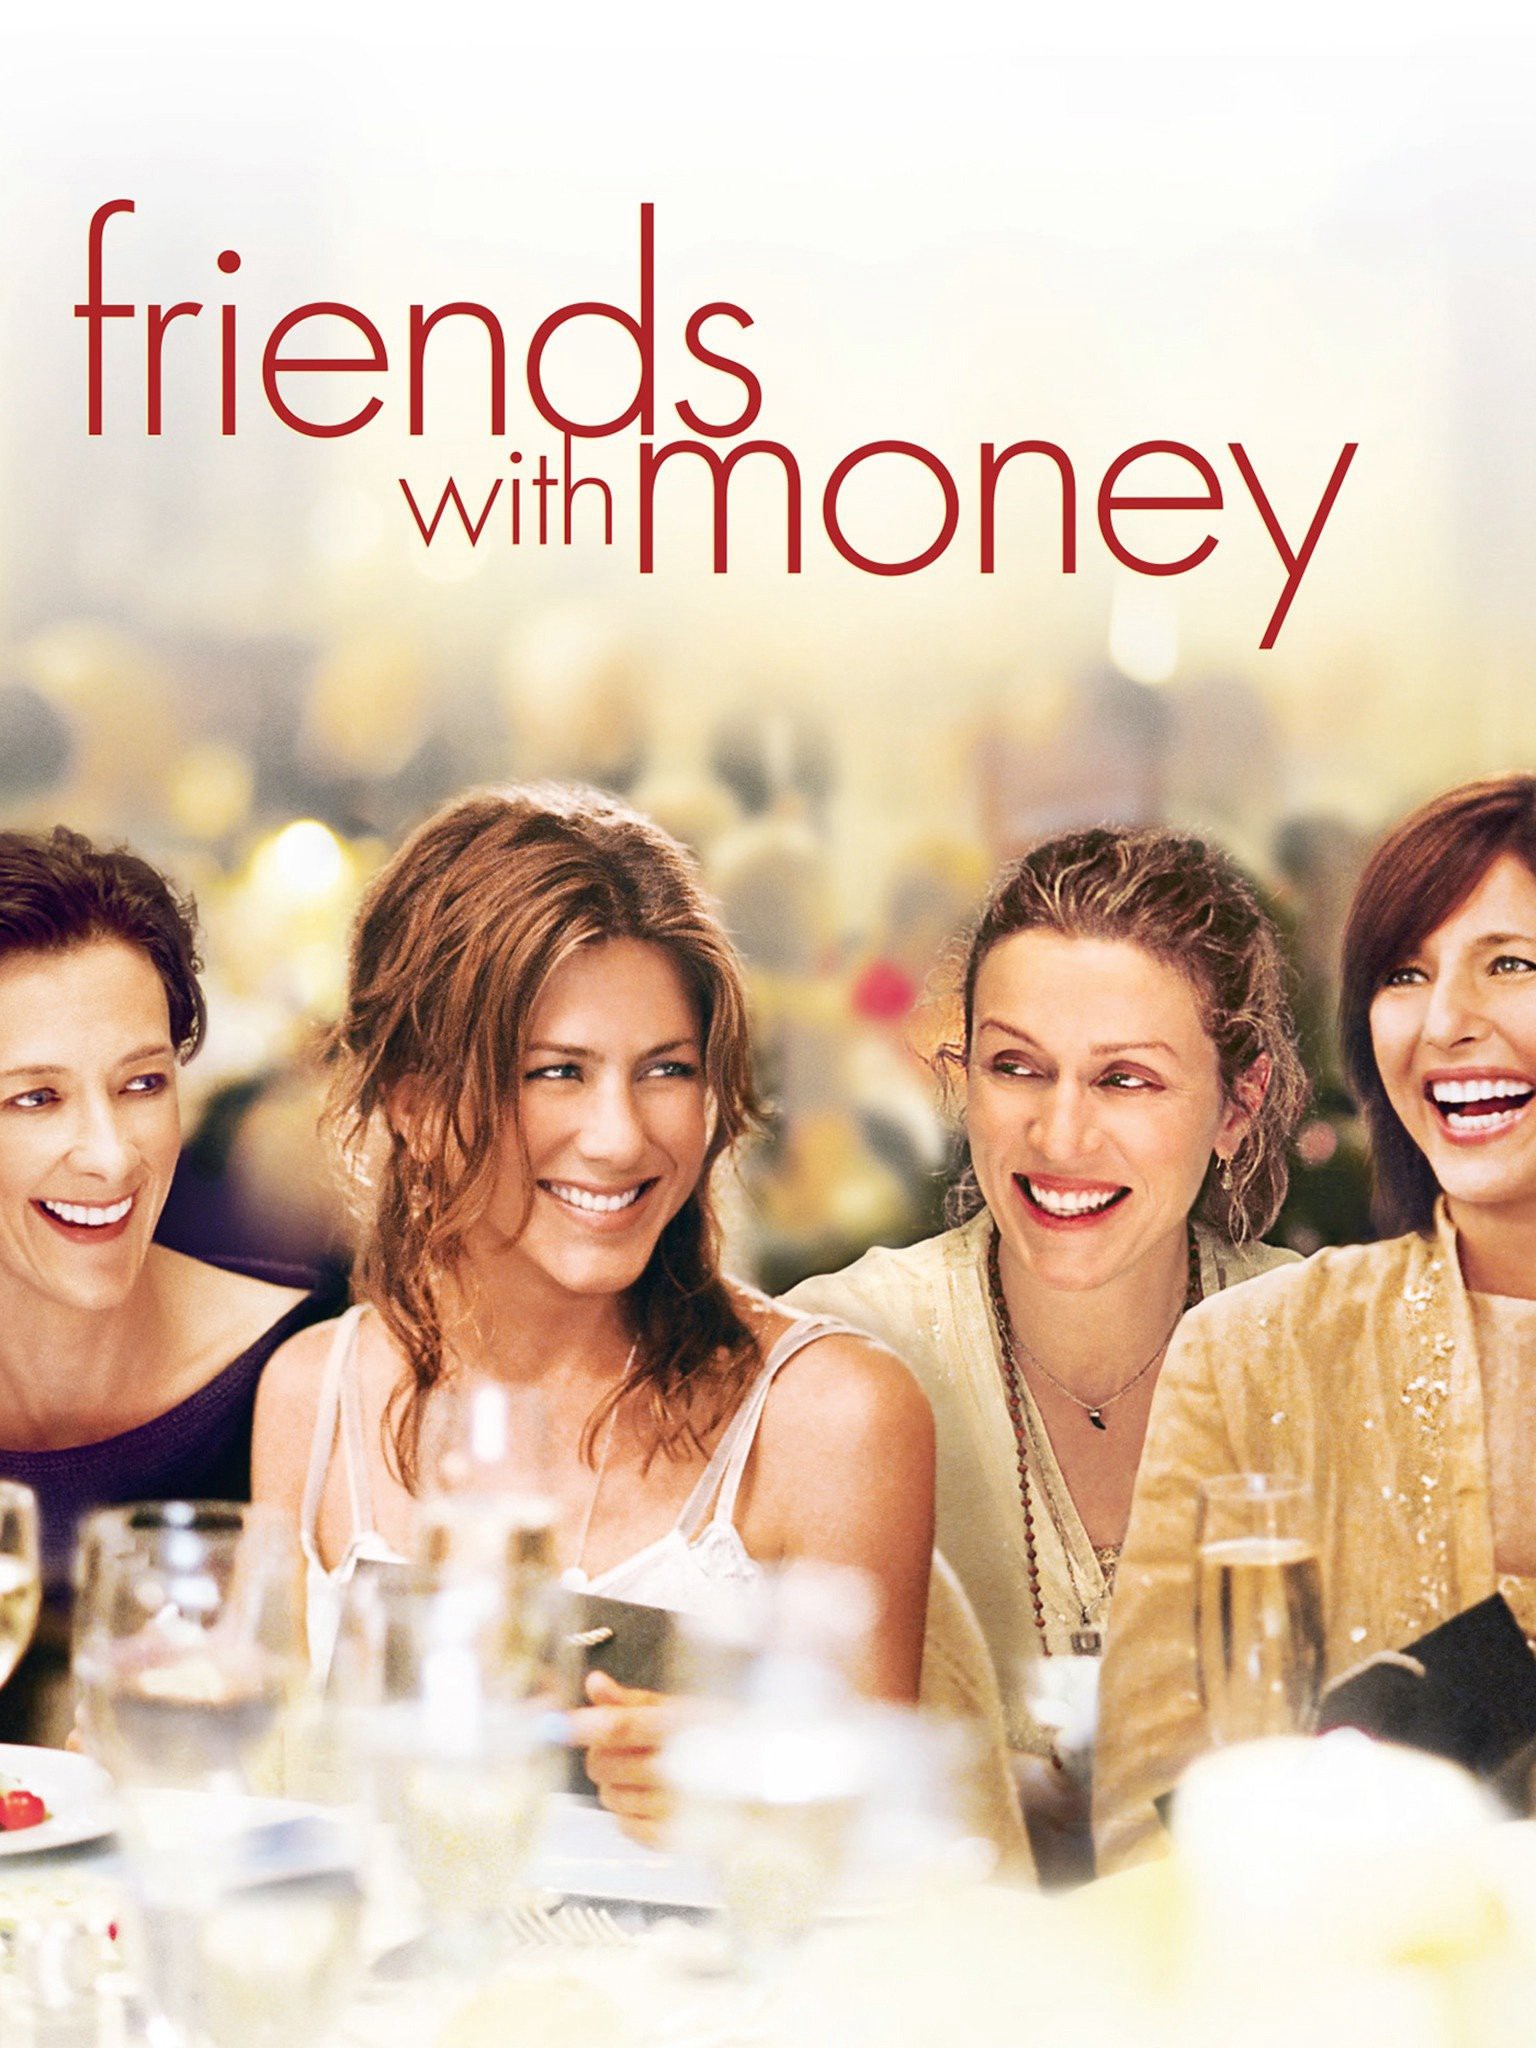 Những người bạn giàu có - Những người bạn giàu có (2006)